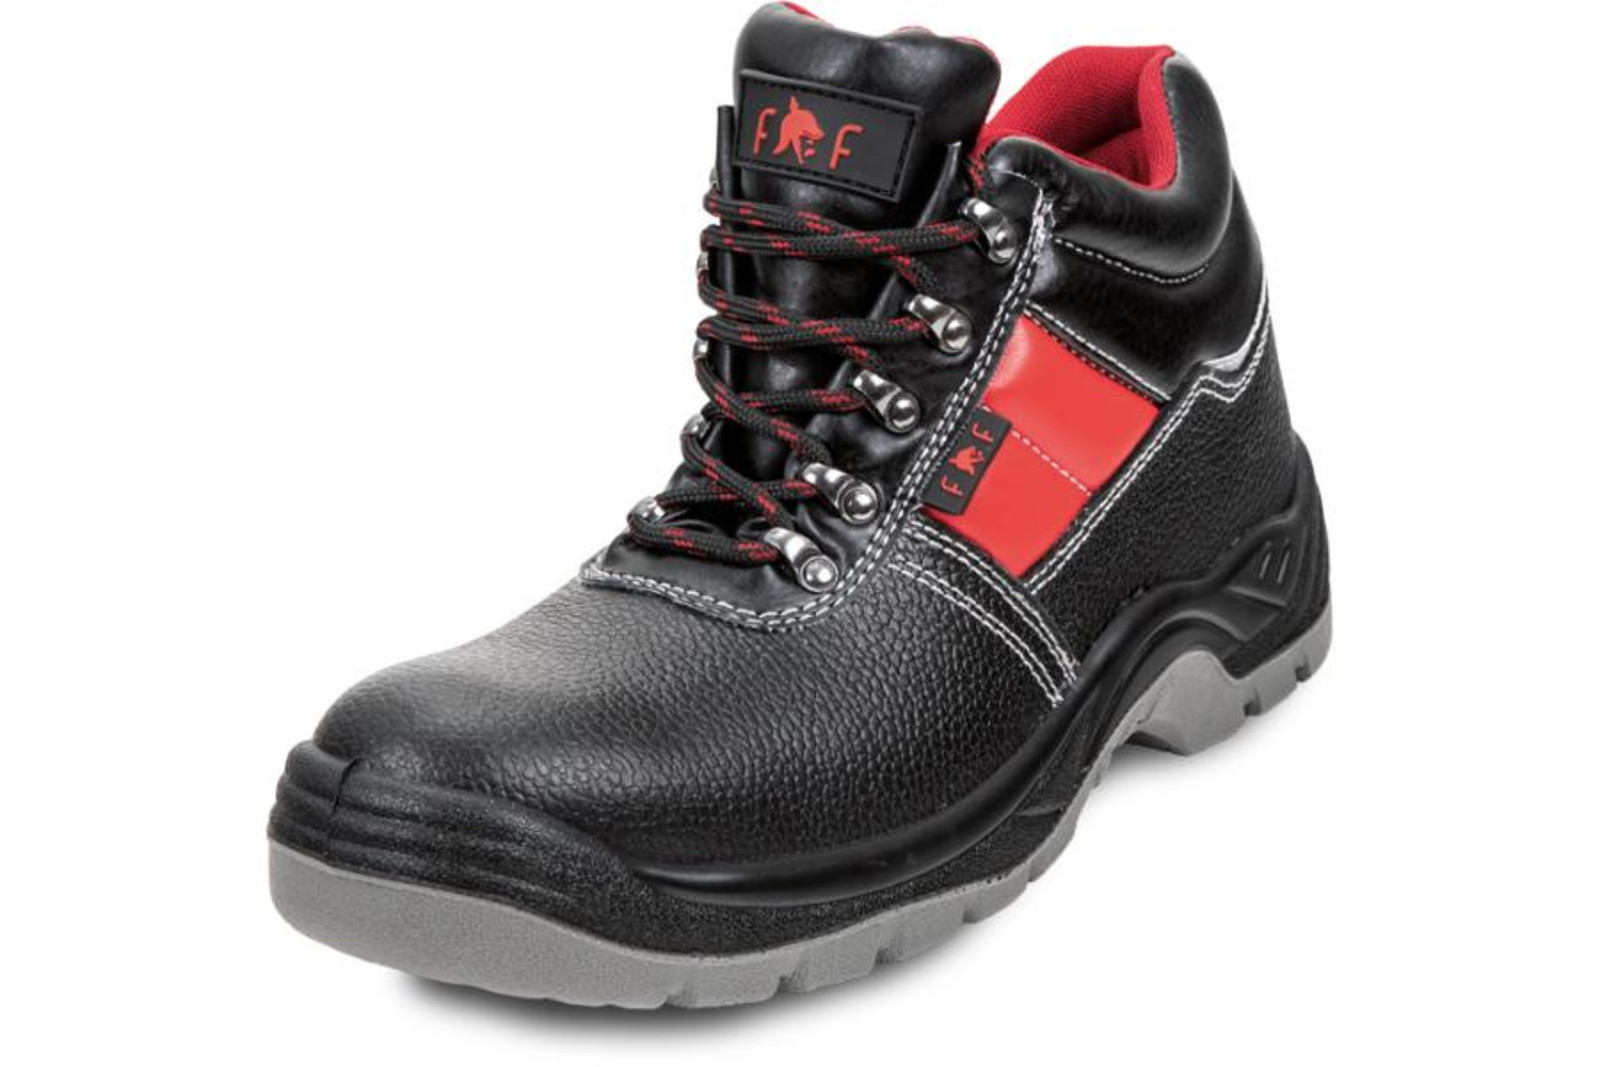 Bezpečnostná obuv SC 03-003 S3 - veľkosť: 37, farba: čierna